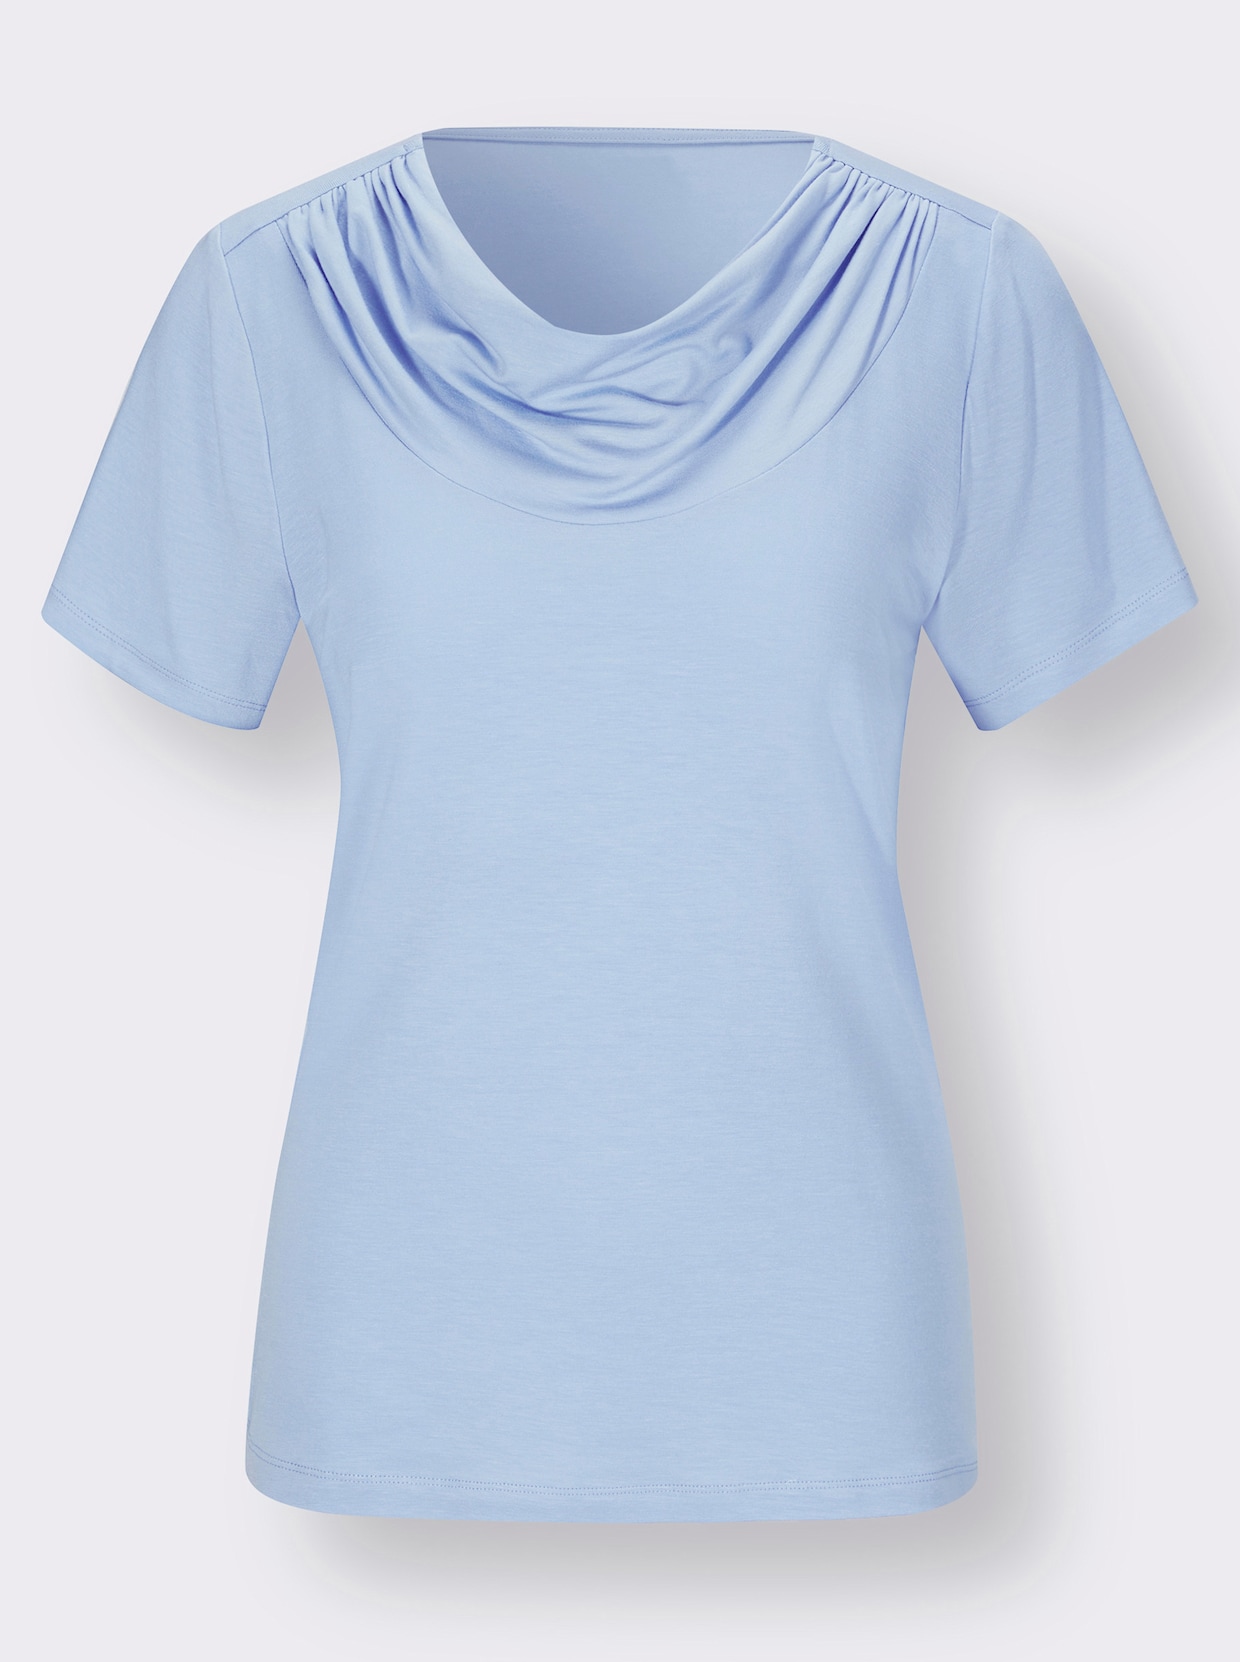 Shirt - himmelblau